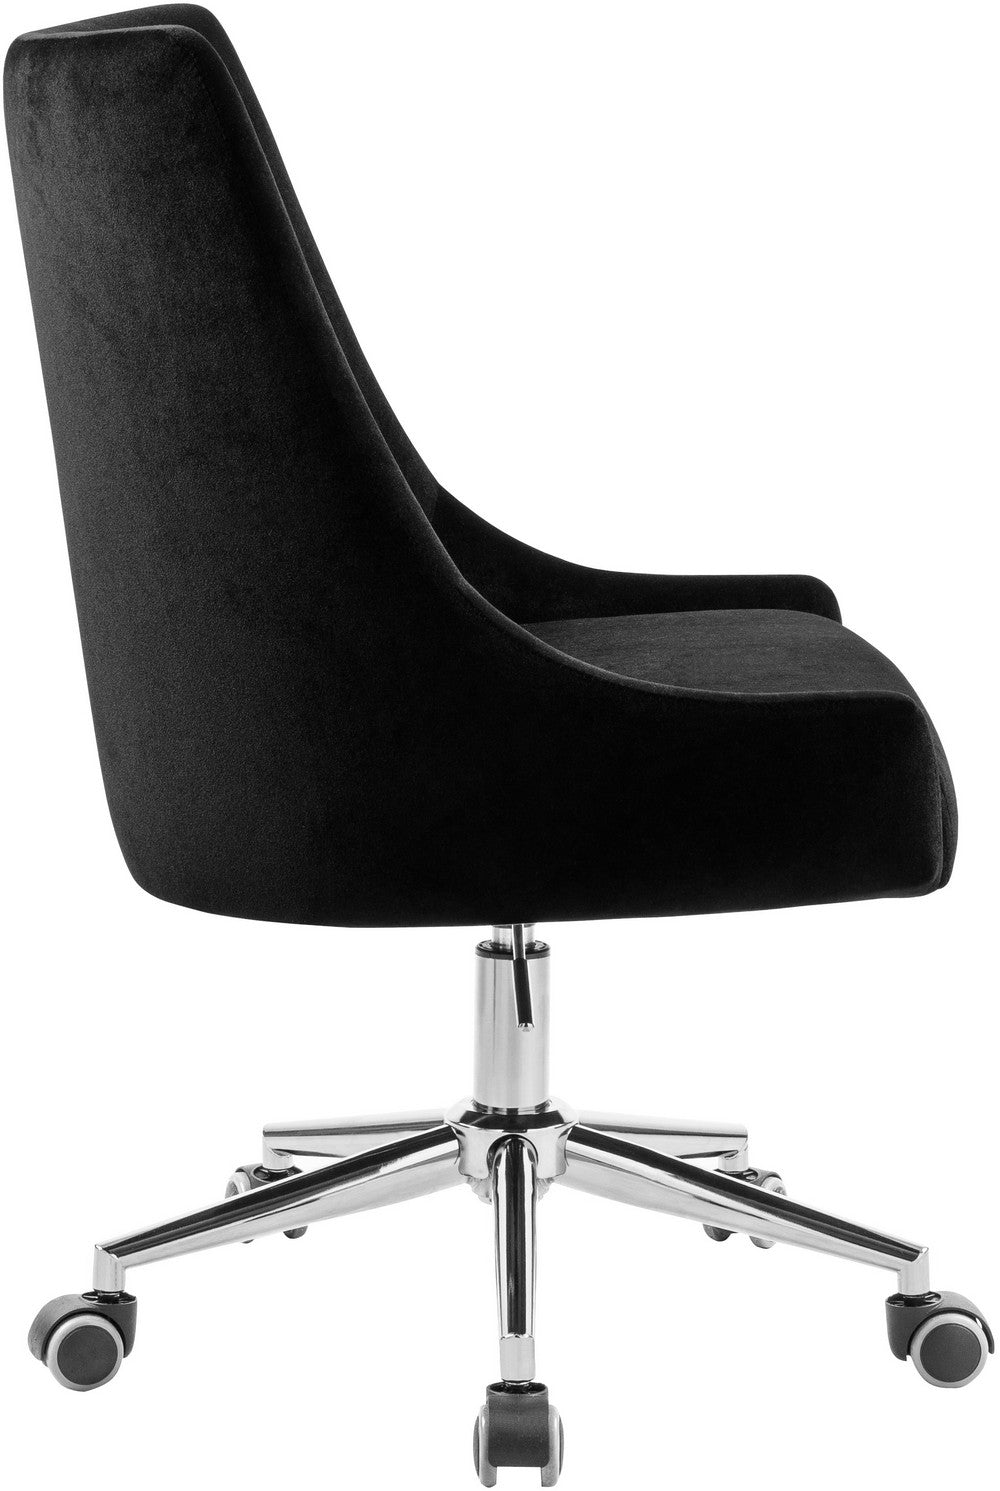 Meridian Furniture Karina Black Velvet Office Chair